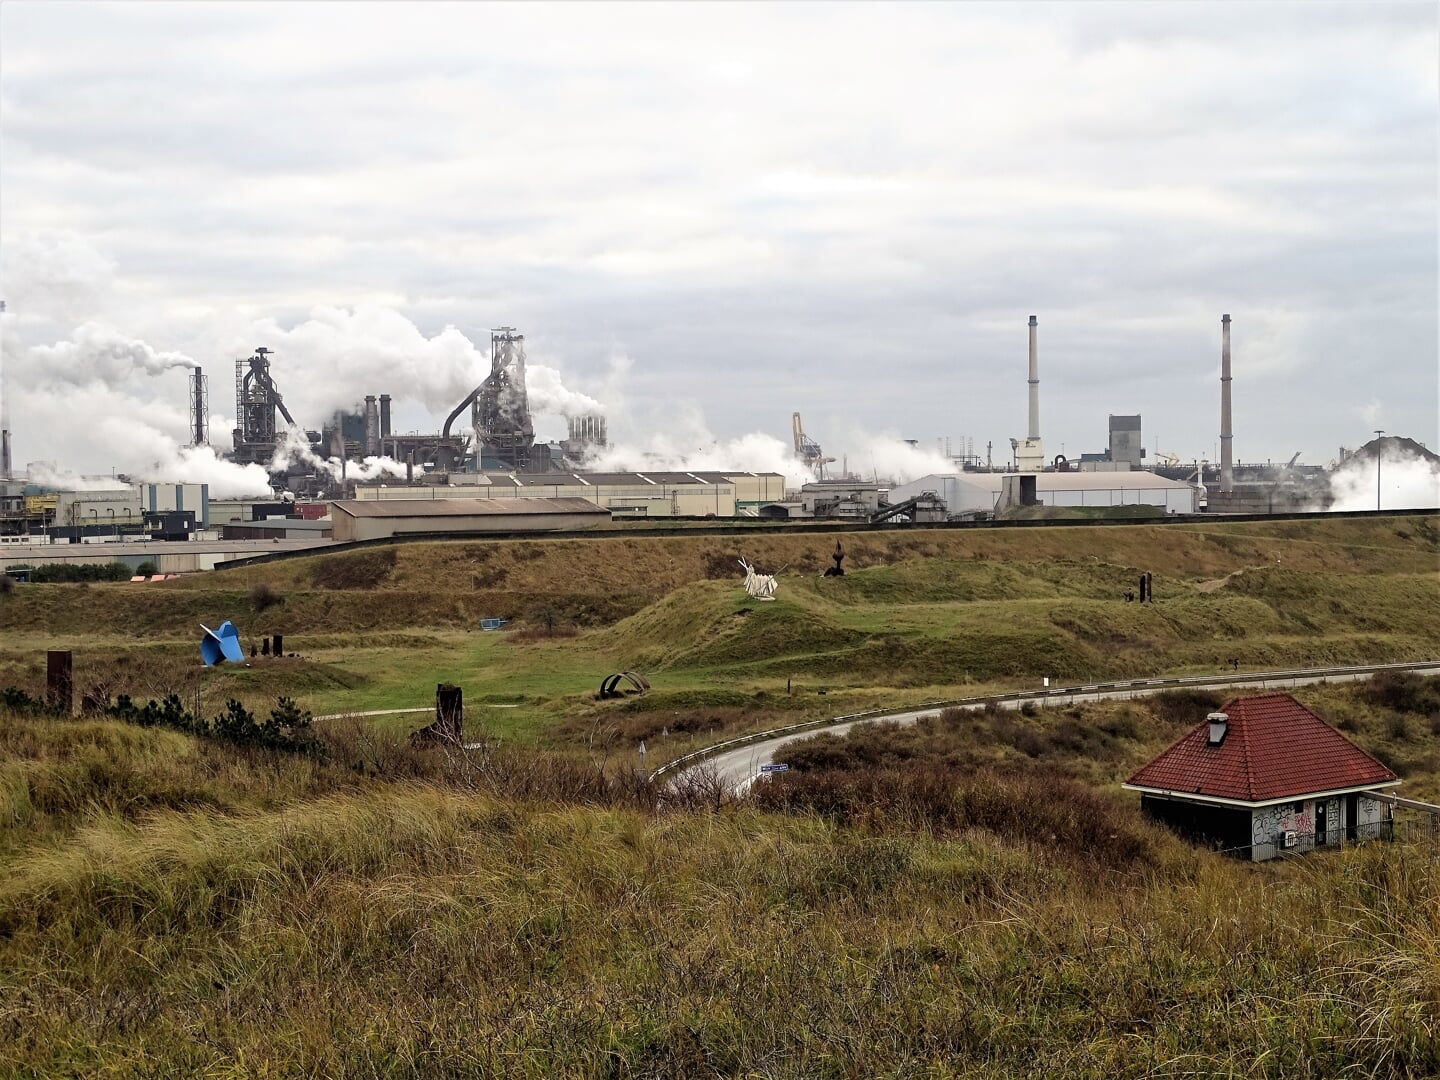 "Tata Steel is de grootste vervuiler van Nederland. Het bedrijf heeft de grootste CO2-emissie van alle Nederlandse bedrijven", schrijft MOB.